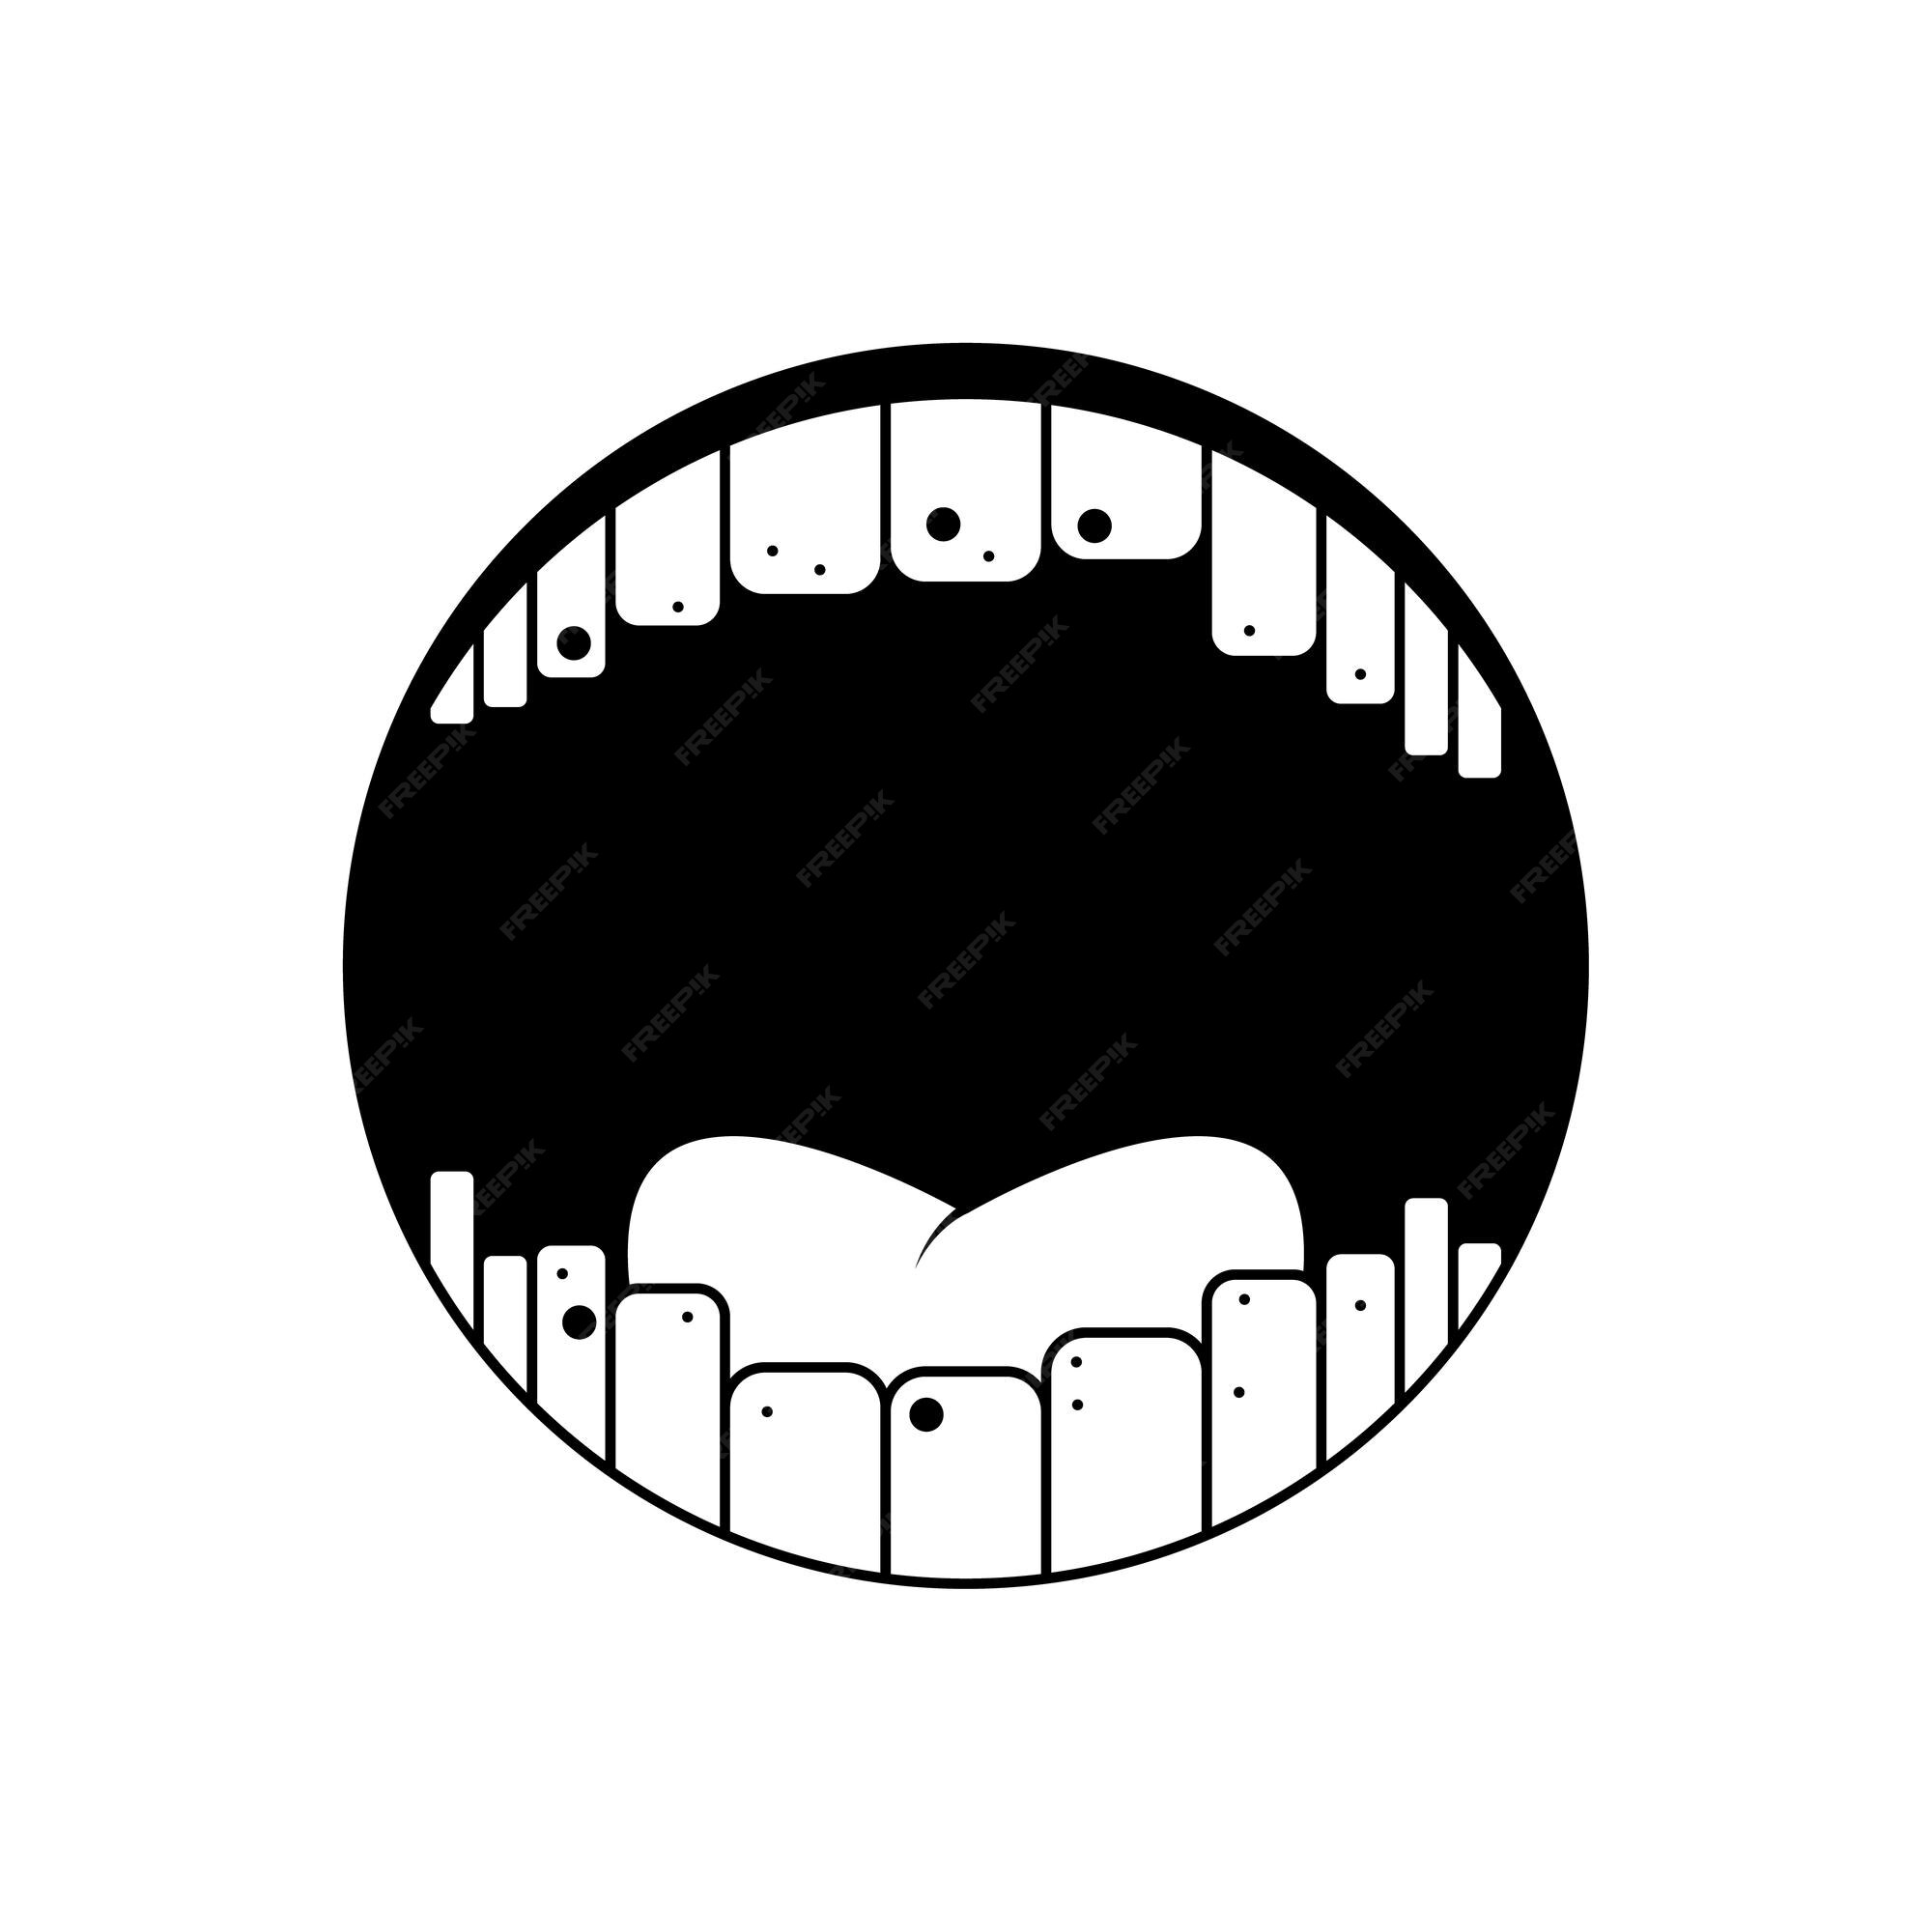 Abstrato preto linha simples pessoas sorriso humano boca aberta